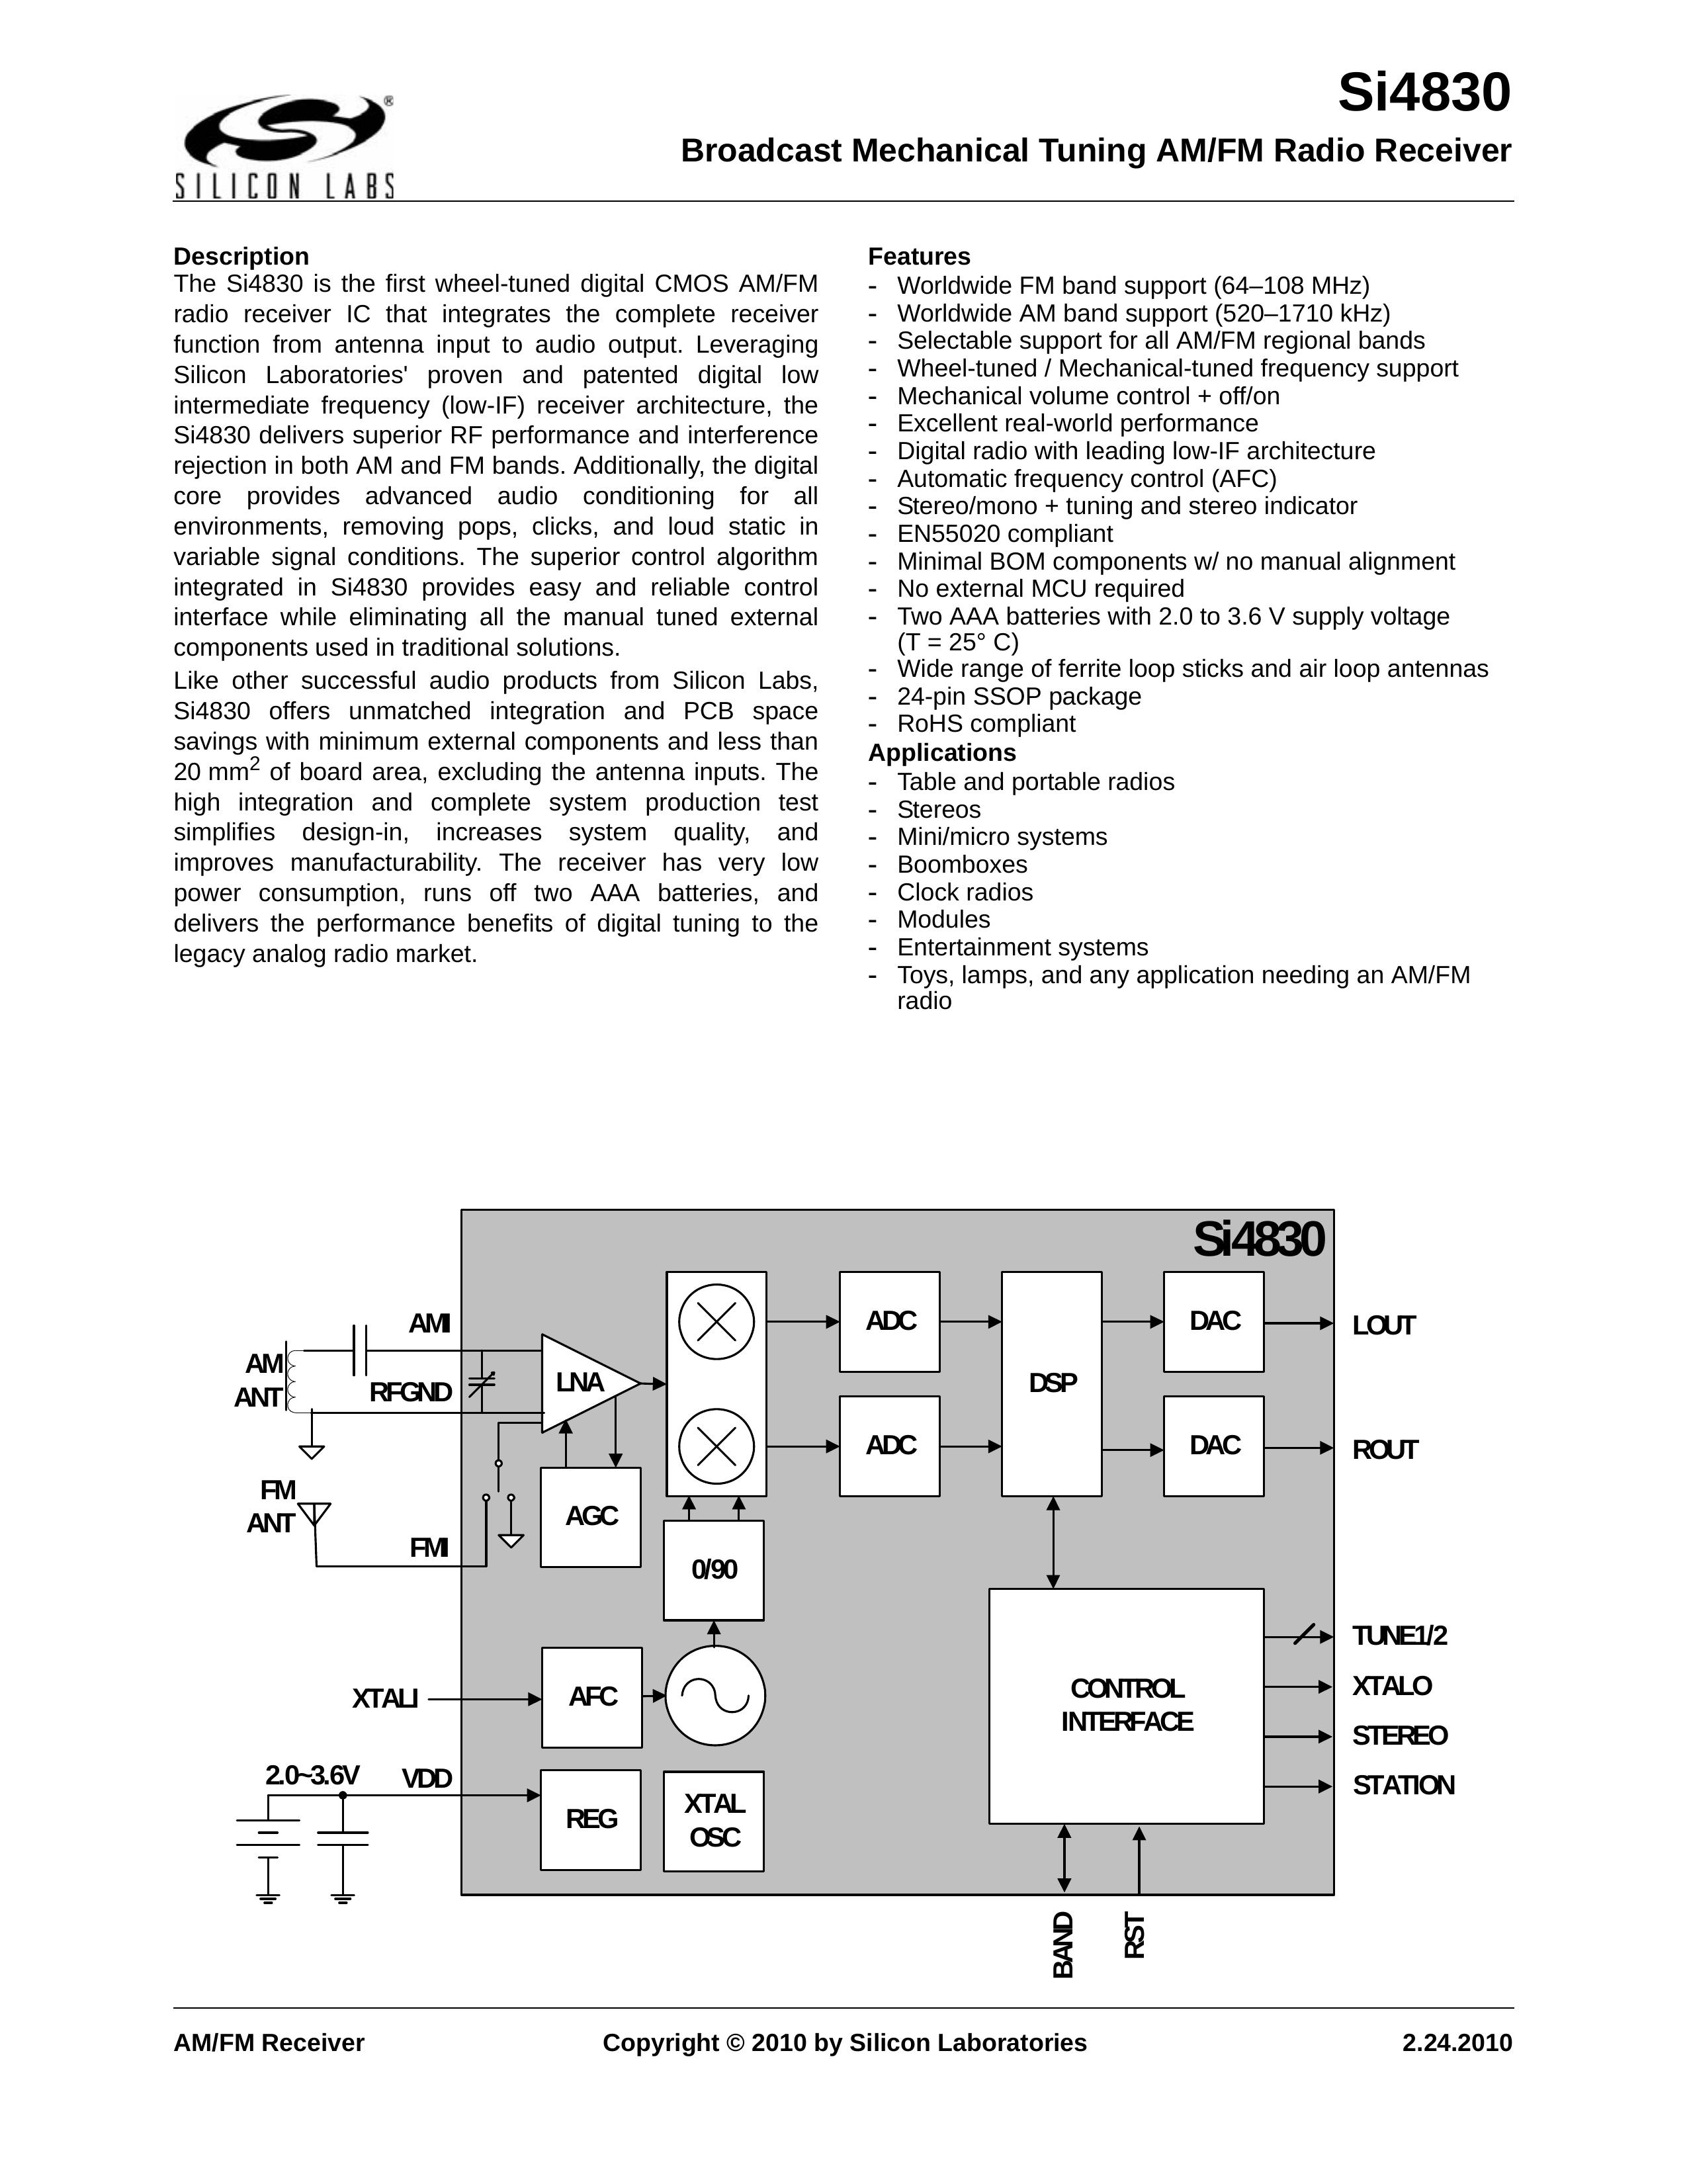 Silicon Laboratories SI4830 Lawn Mower User Manual